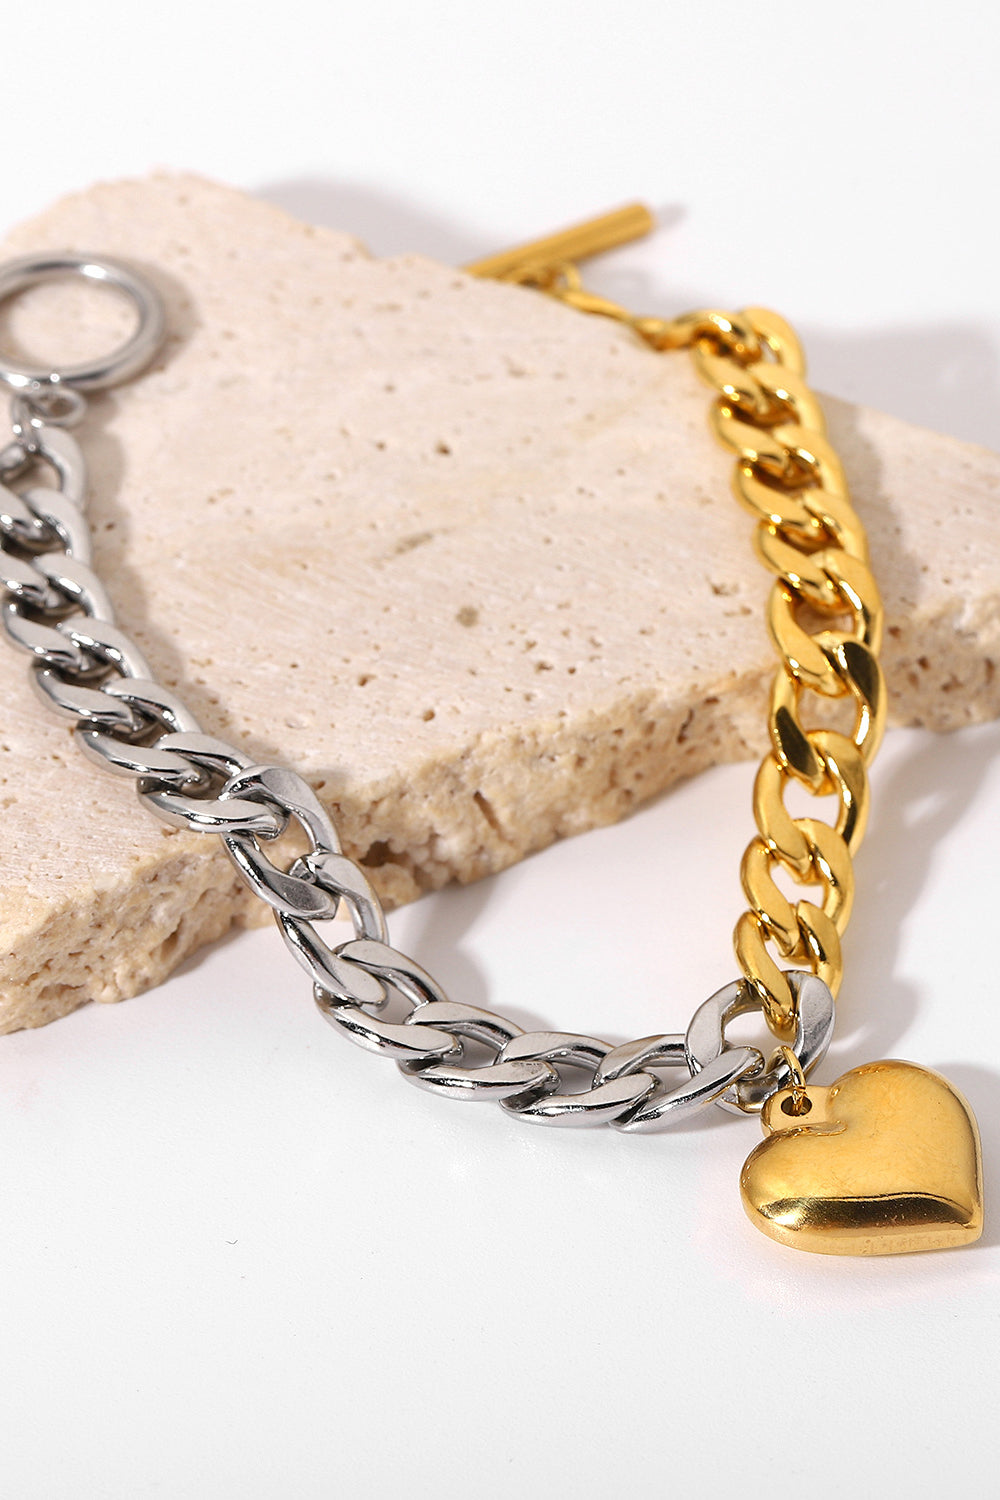 Chain Heart Charm Bracelet - Multicolored / One Size - Women’s Jewelry - Bracelets - 2 - 2024